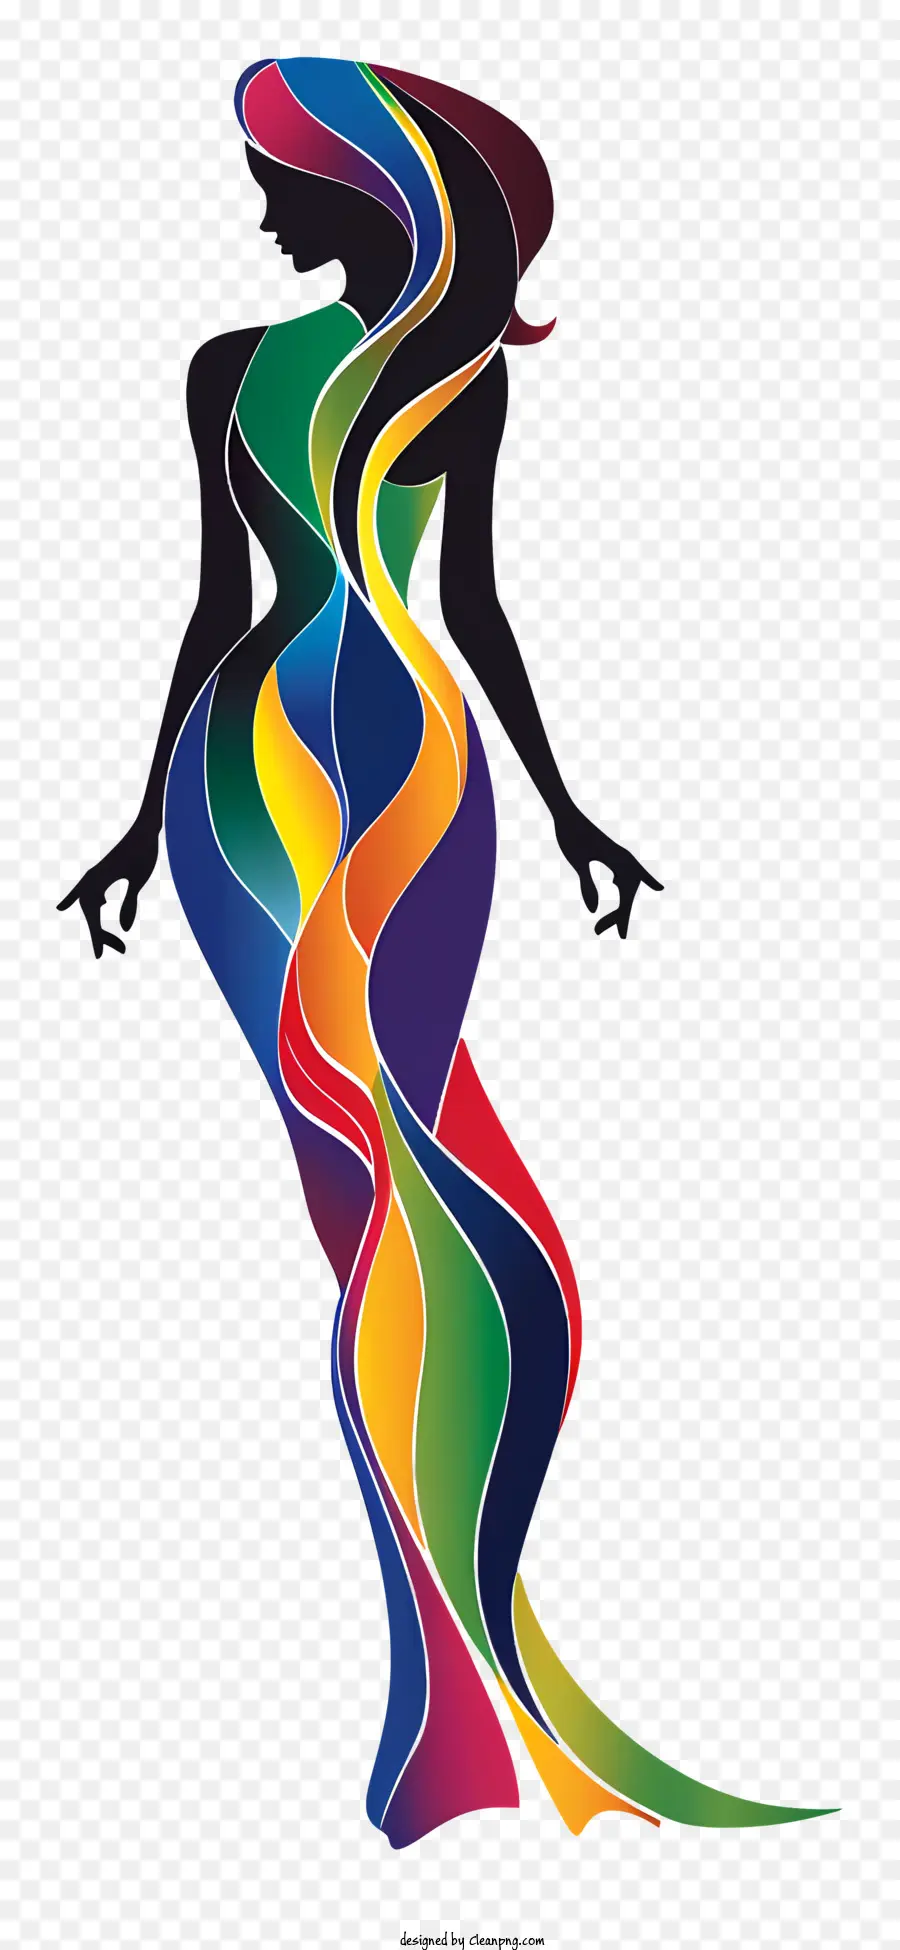 disegno astratto - Abstract Rainbow Dress fluisce con movimento artistico